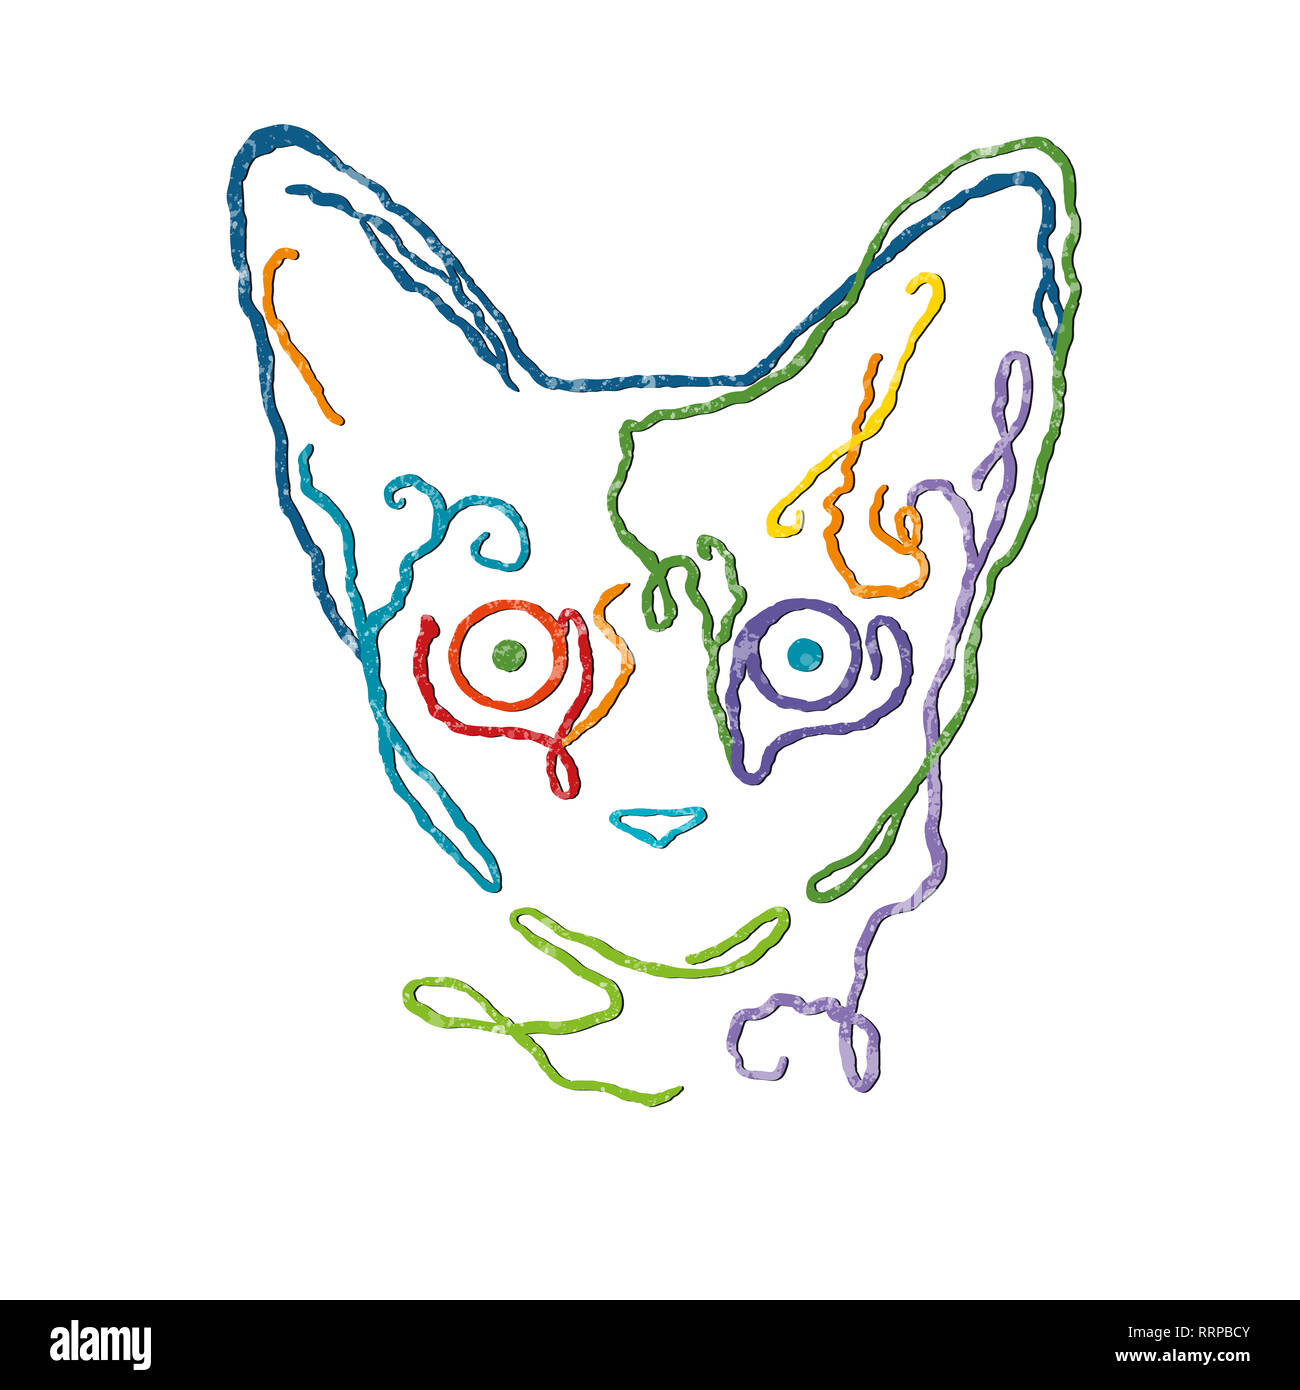 Il disegno vettoriale illustrazione/ linea semplice disegno/ colori luminosi/cute cat/ texture bianche Foto Stock